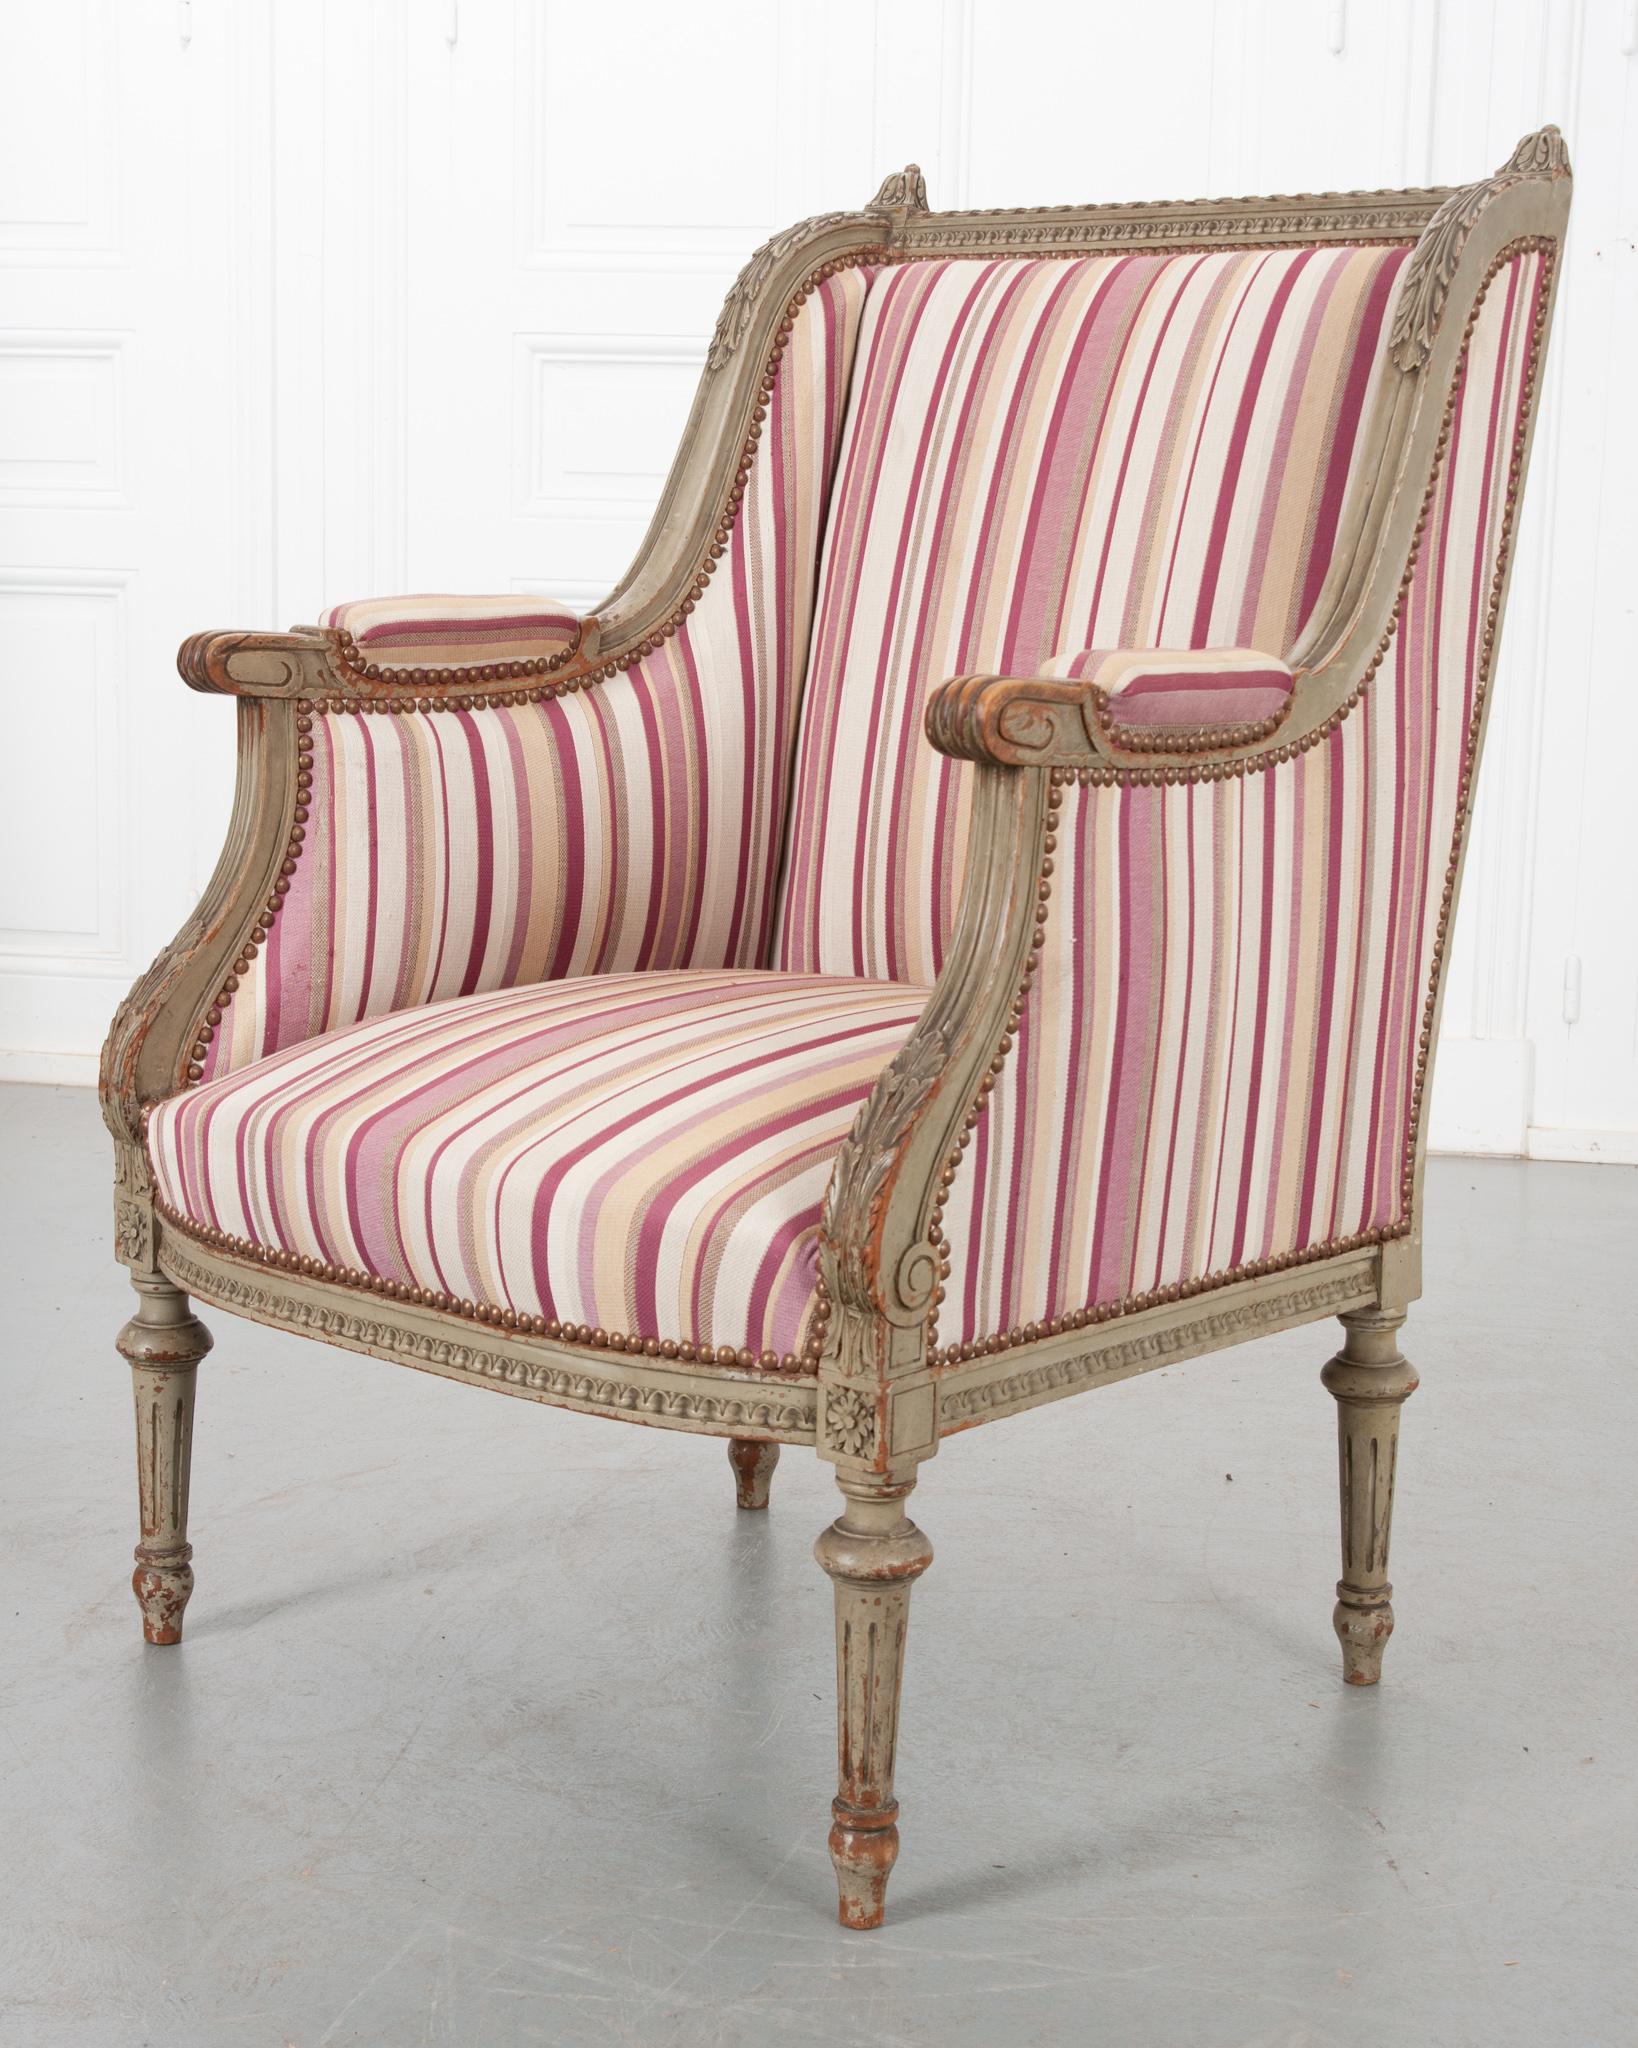 Eine fabelhafte individuelle Bergère im Louis-XVI-Stil aus dem Frankreich des 19. Jahrhunderts. Dieser antike Sessel hat ein sorgfältig geschnitztes und bemaltes Gestell, an dem ein schöner gestreifter Stoff befestigt ist. Der quadratische Rahmen